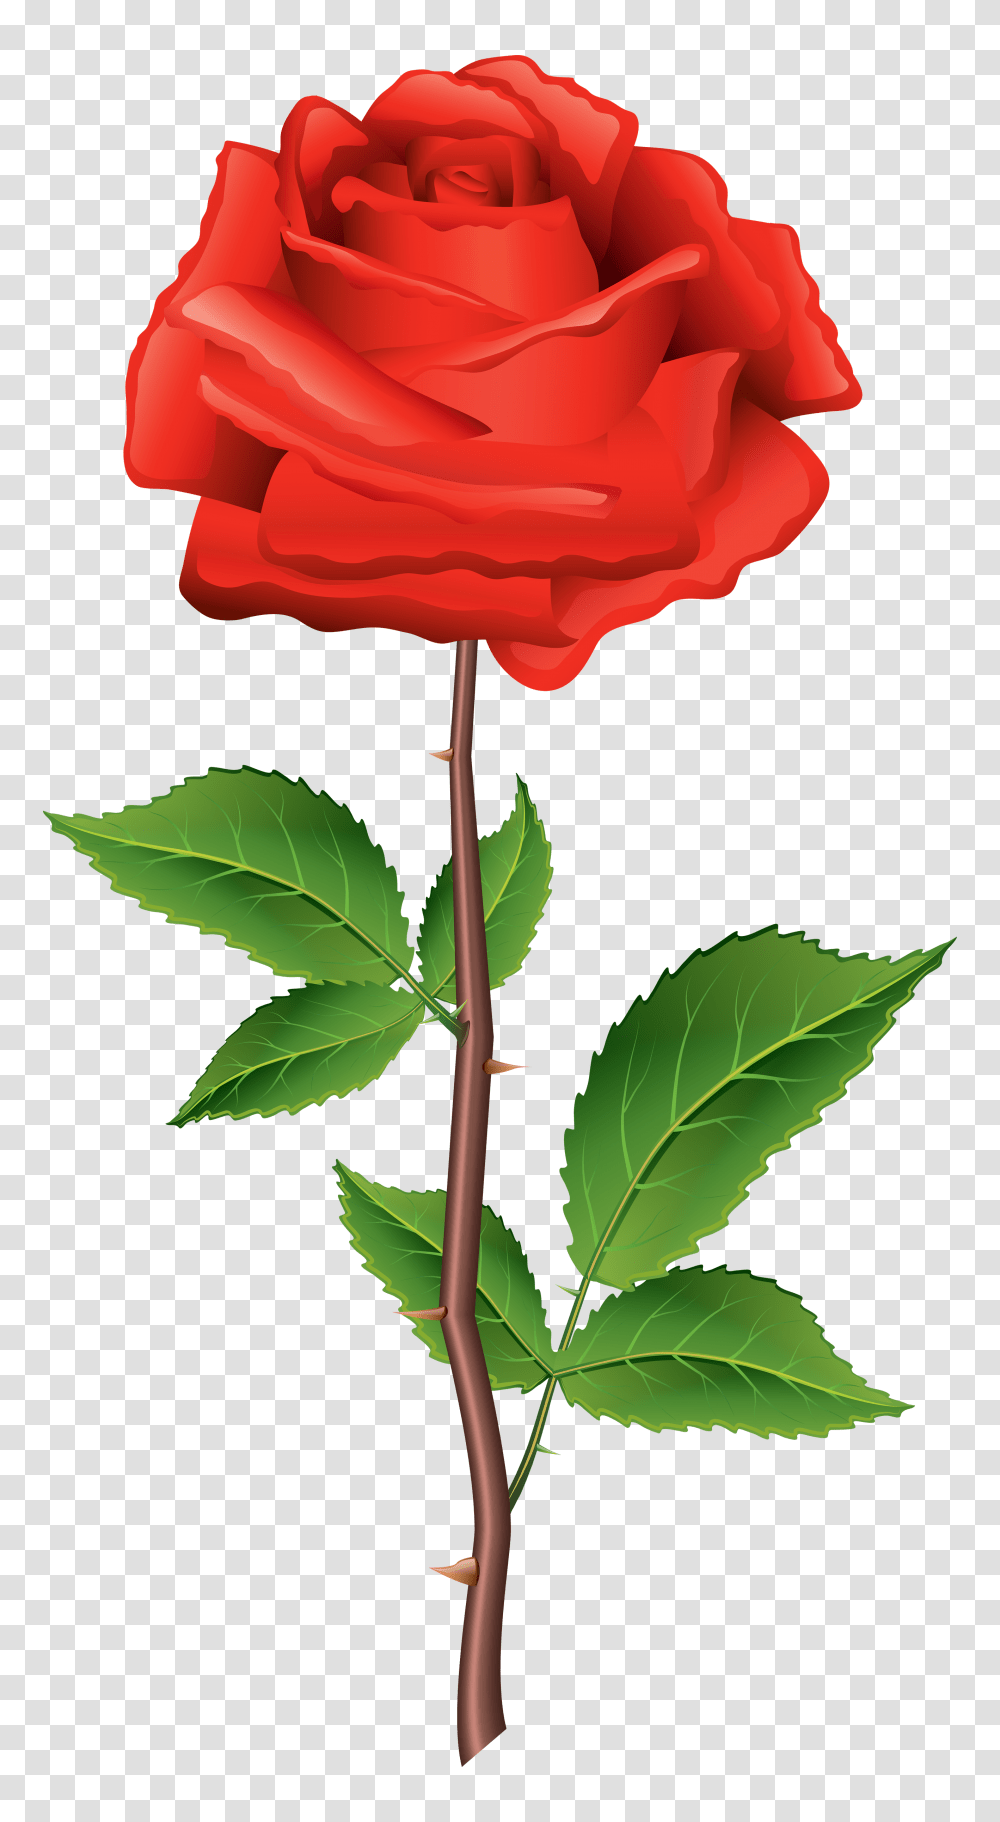 Rose Flower Images Free Download Red Rose Clipart, Plant, Blossom, Leaf, Petal Transparent Png